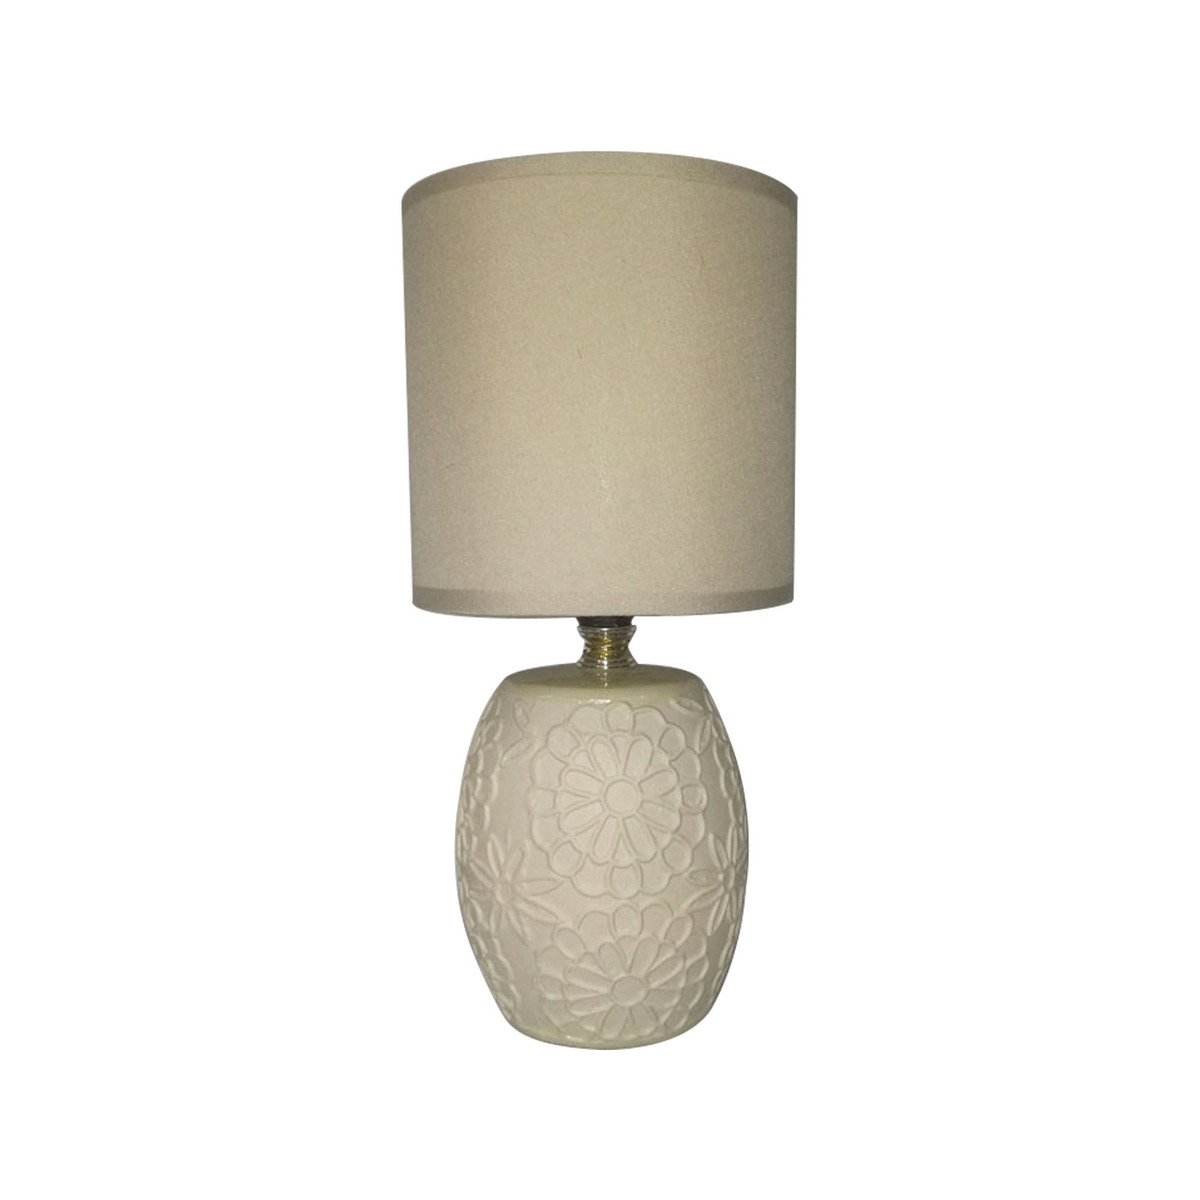 Maple Leaf Ceramic Table Lamp HS8088PRM 13x27cm Assorted